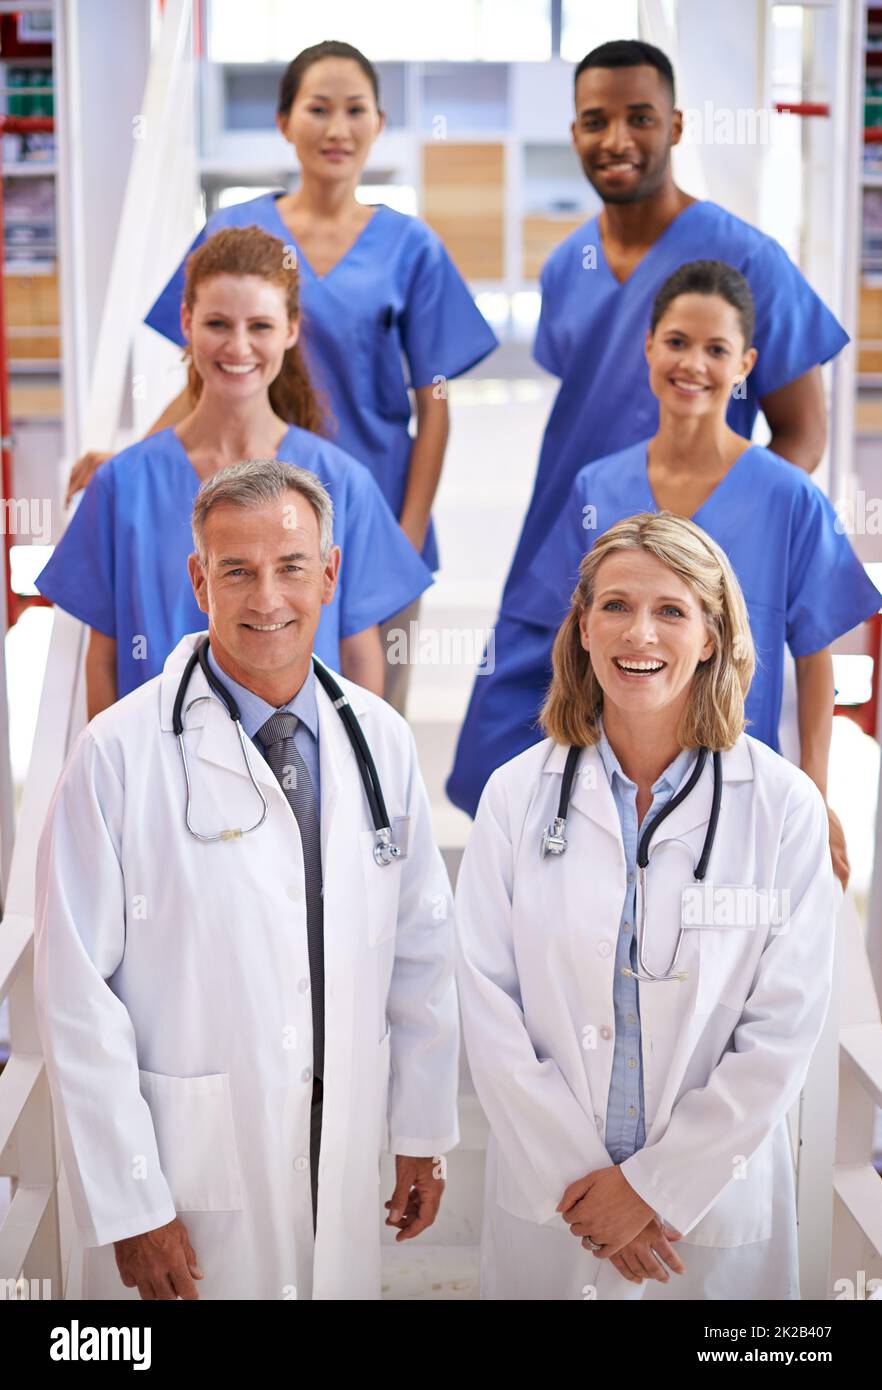 Sie werden Ihnen die bestmögliche Pflege geben. Porträt eines vielfältigen Teams von medizinischen Fachkräften, das auf einer Treppe in einem Krankenhaus steht. Stockfoto